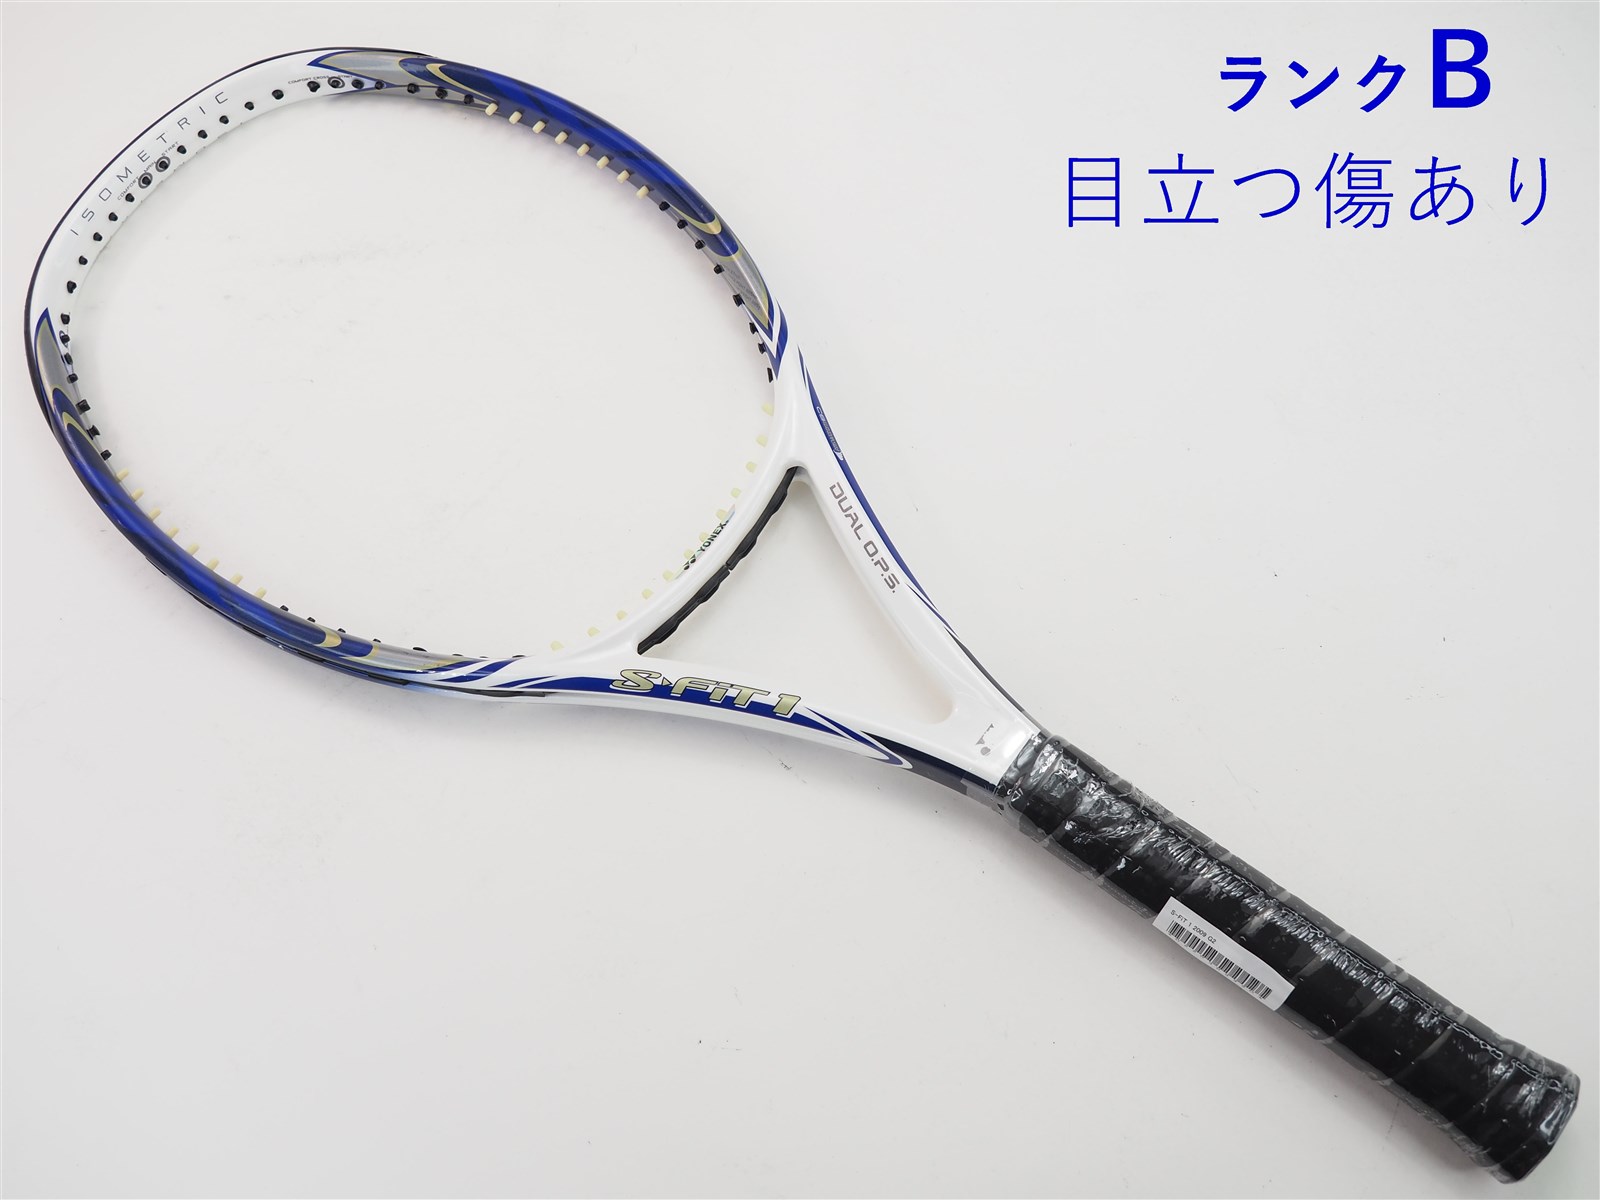 テニスラケット ヨネックス エス フィット 1 2009年モデル【DEMO】 (G2 ...